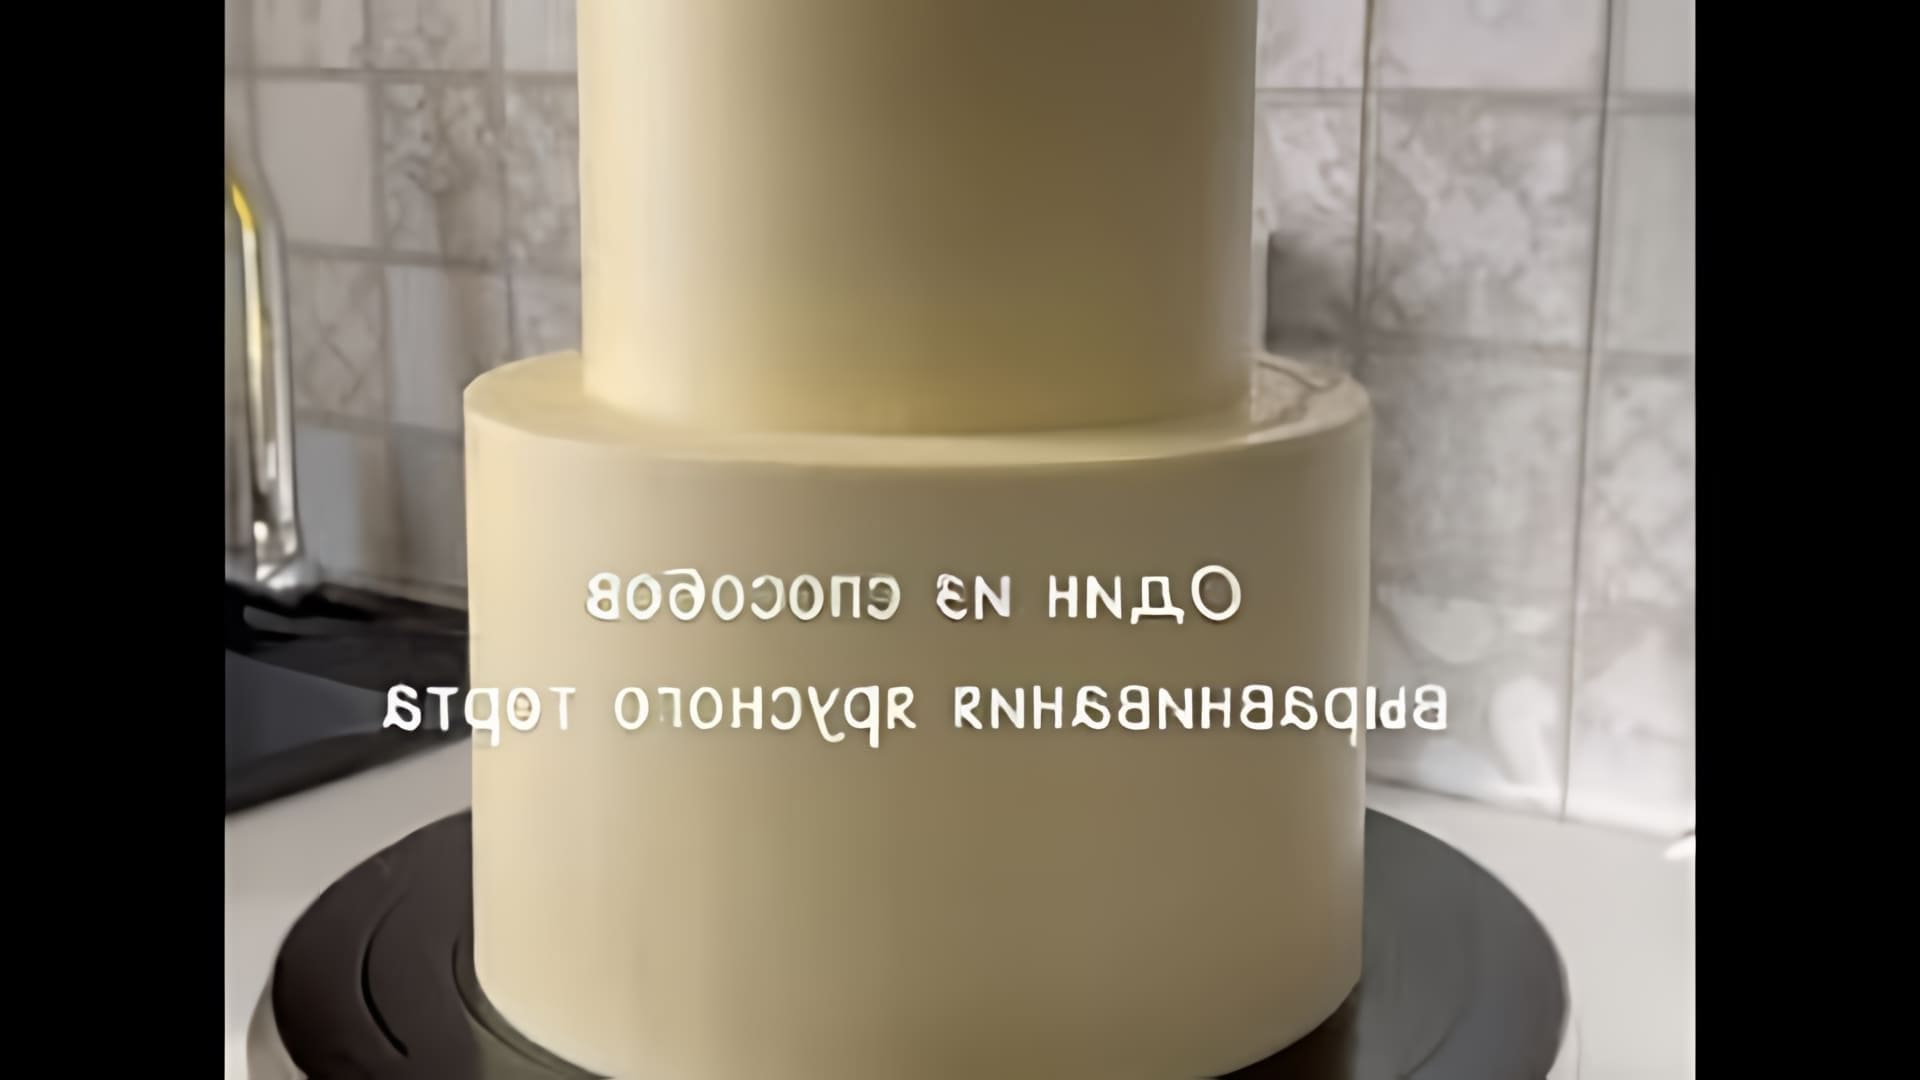 Способ Выравнивания 2-х ярусного Торта Ганашем на Белом Шоколаде - это видео-ролик, который демонстрирует процесс выравнивания двухъярусного торта с использованием ганаша на белом шоколаде